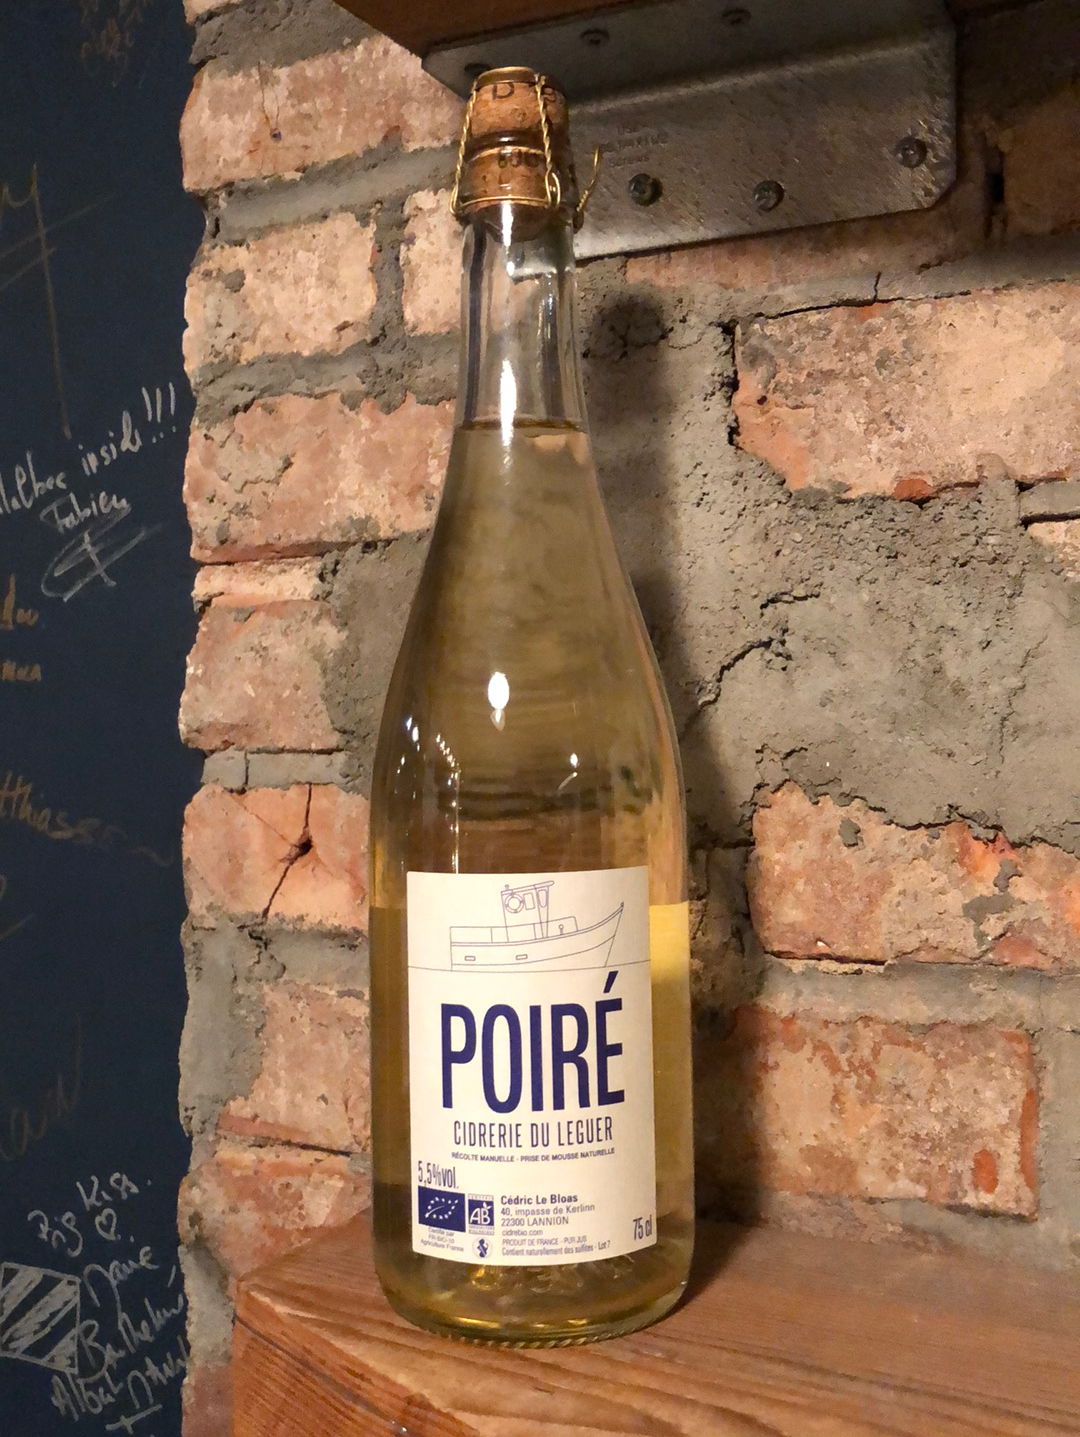 Ciderie du Leguer Poire 2018